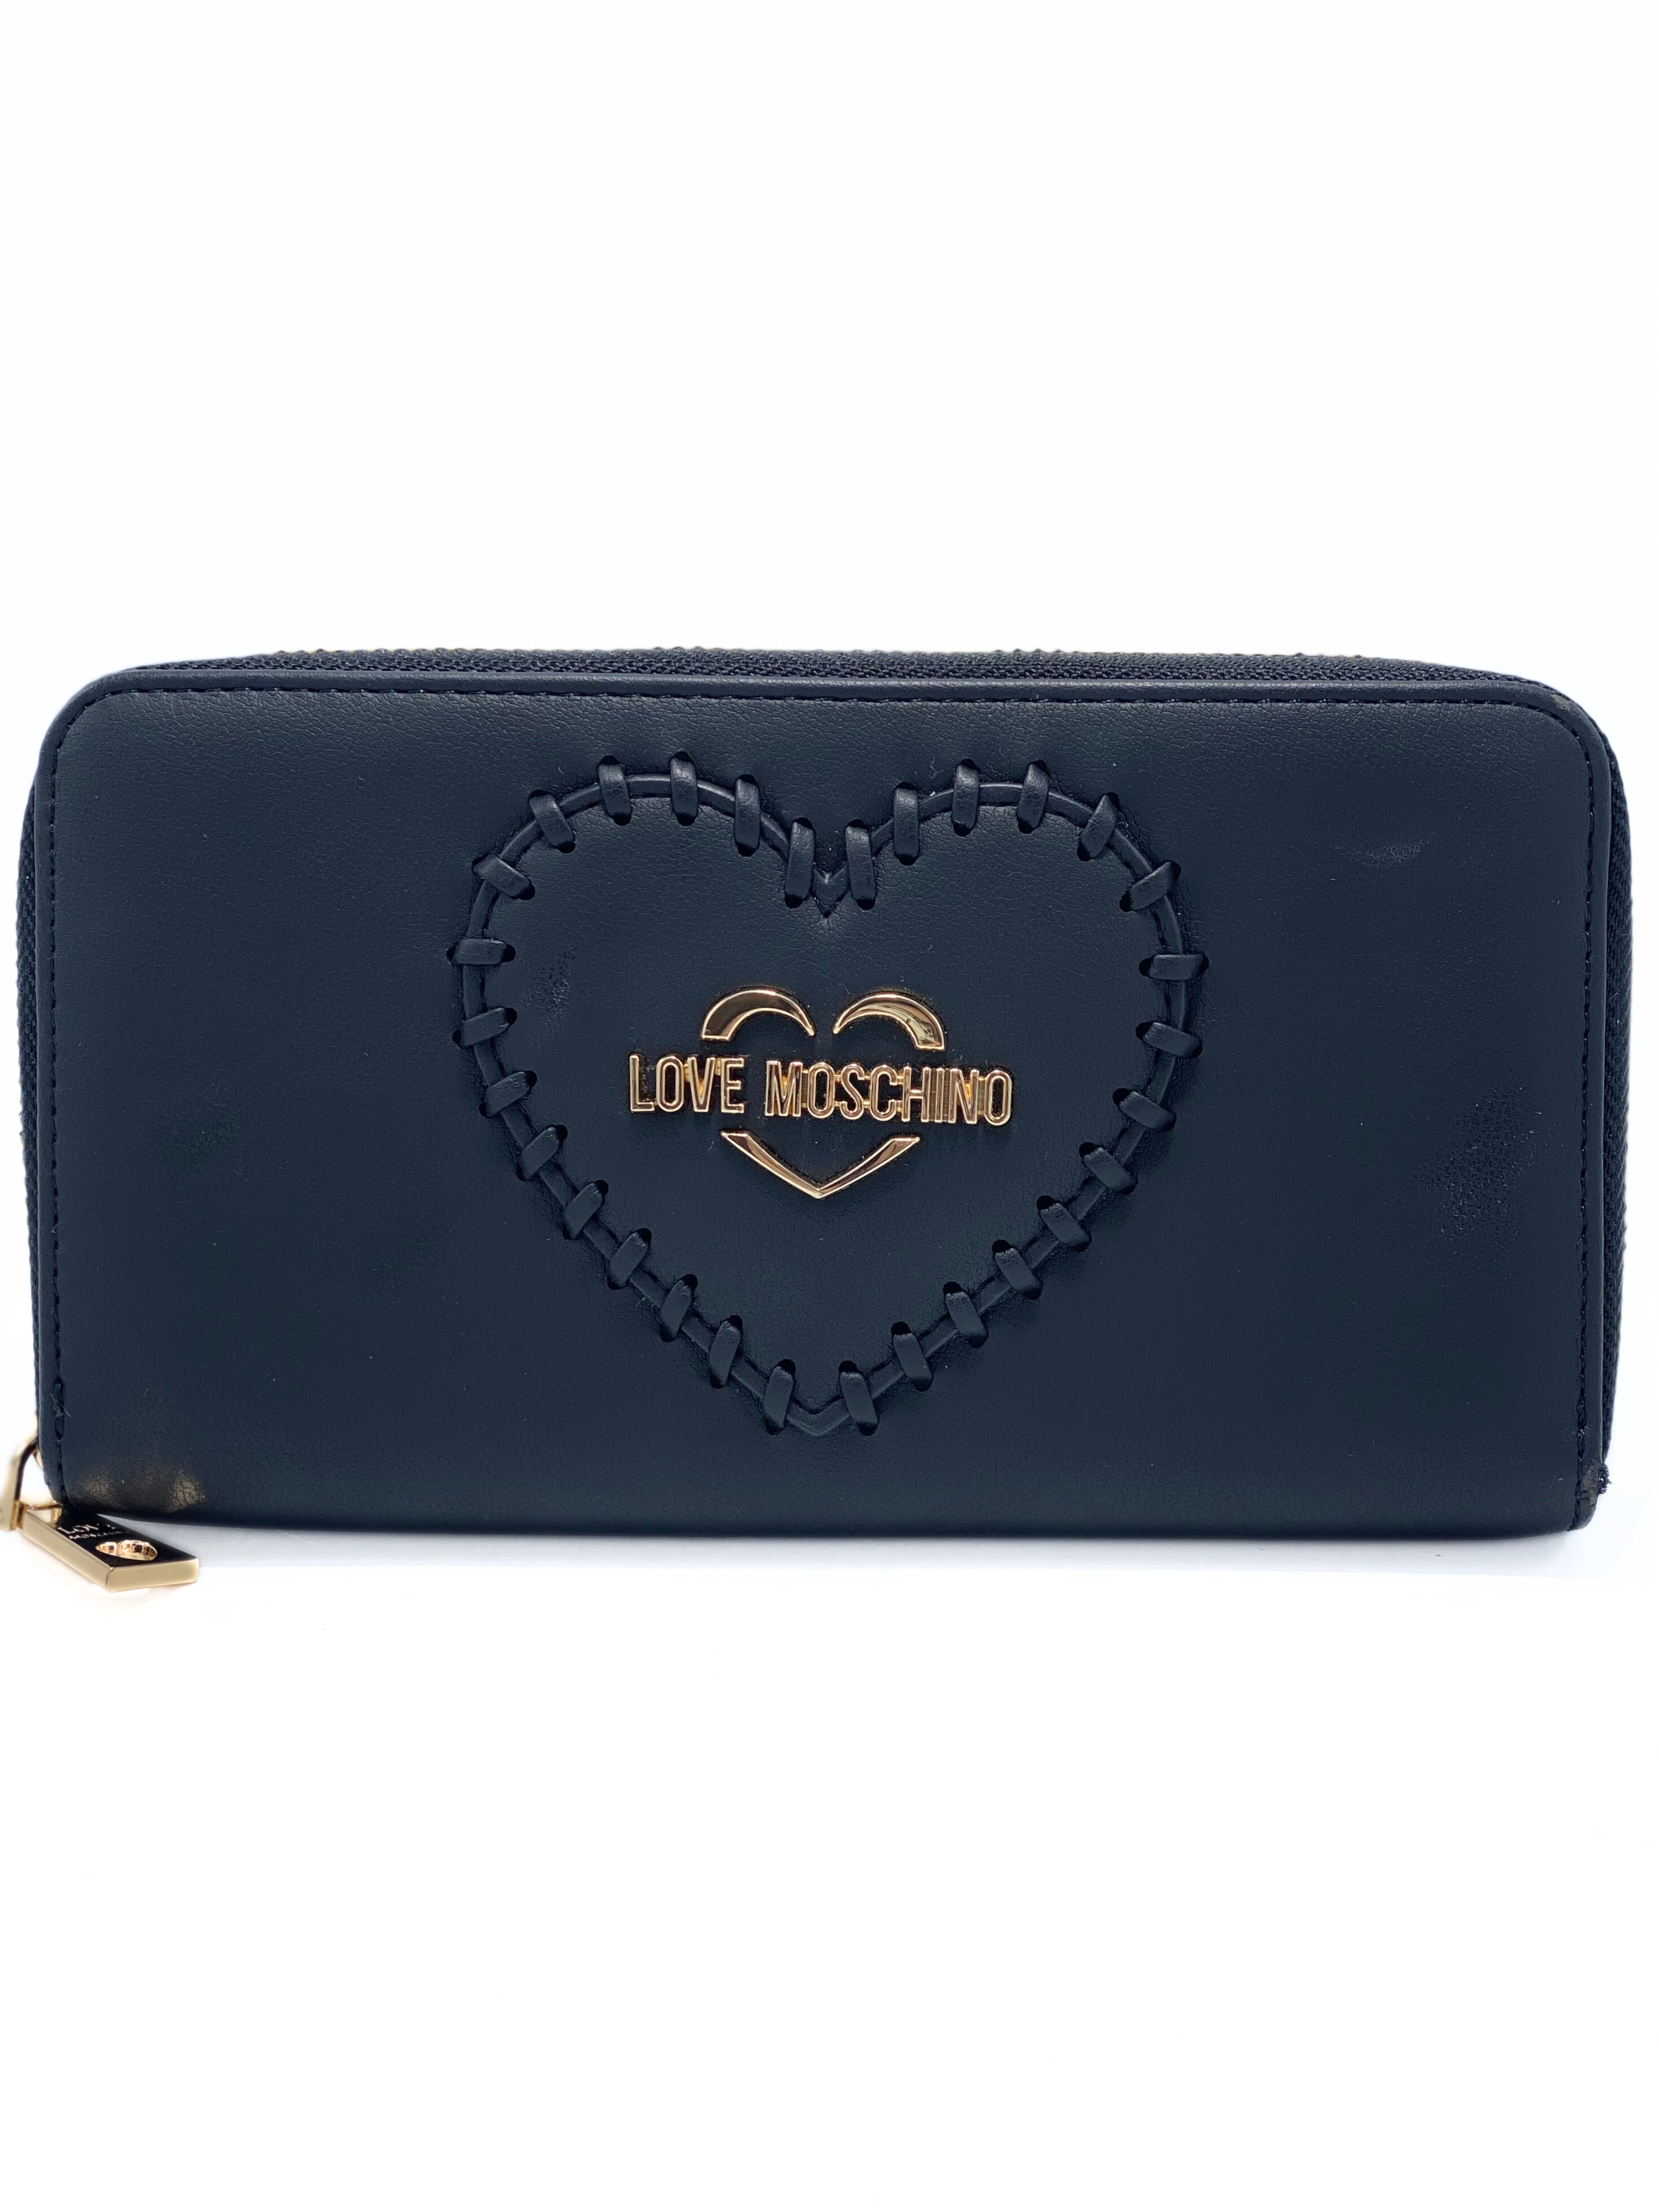 Billetera Moschino Soft Heart Black Round Zip Wallet